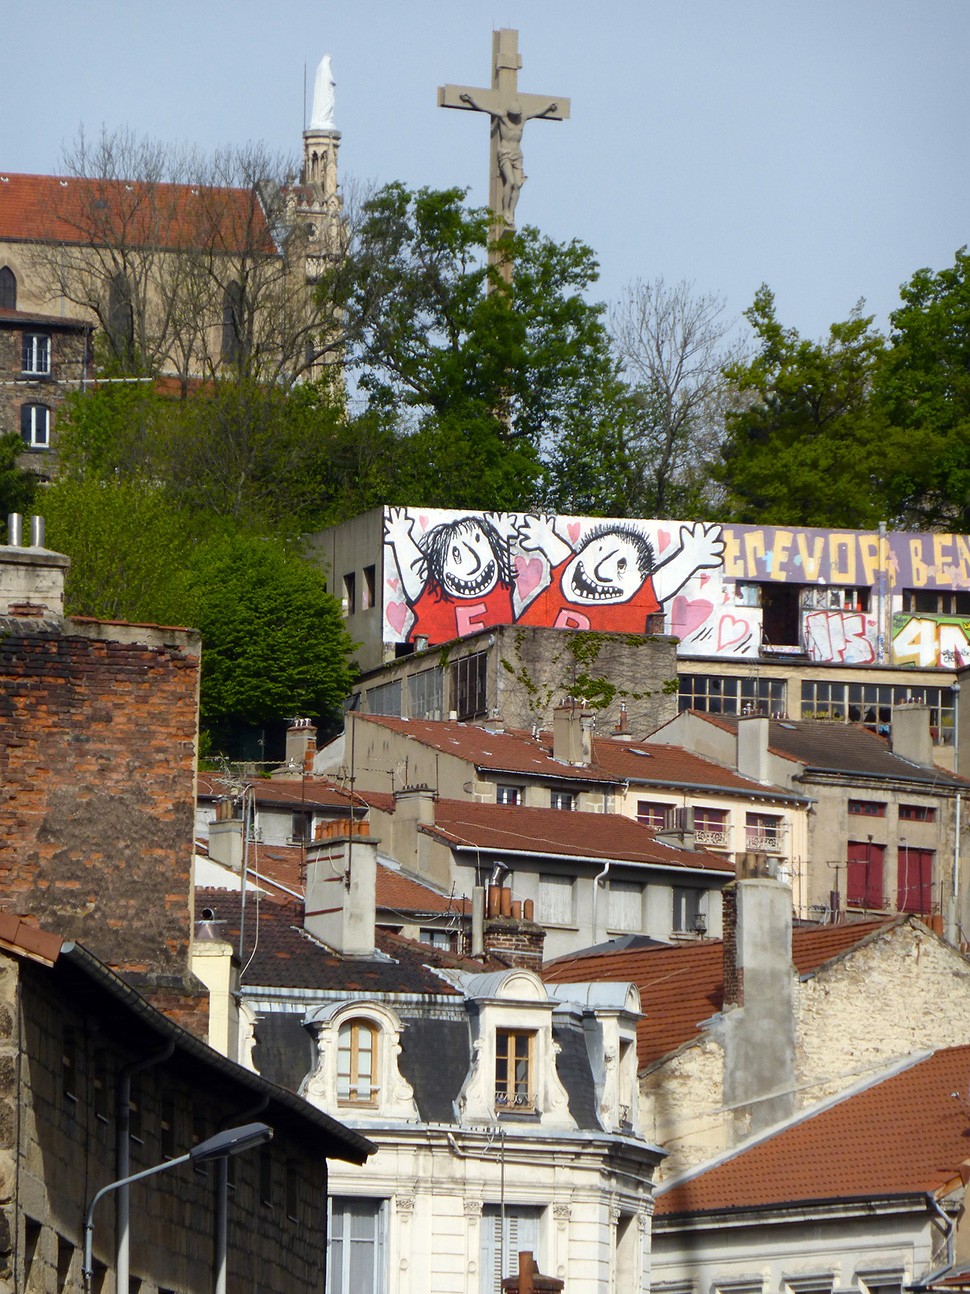 Ella-&-Pitr-St-Etienne-toit-rooftop-piece-art-ubrain-les-papiers-peintres-saint-etienne-france-2014_2-web